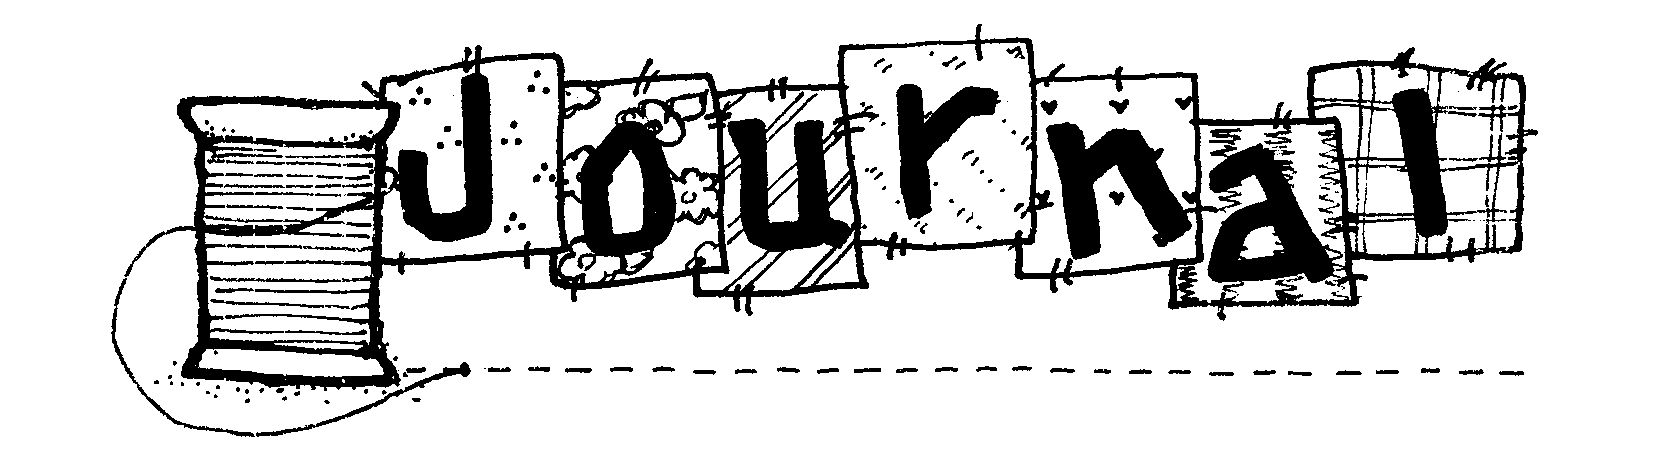 journal clipart word art